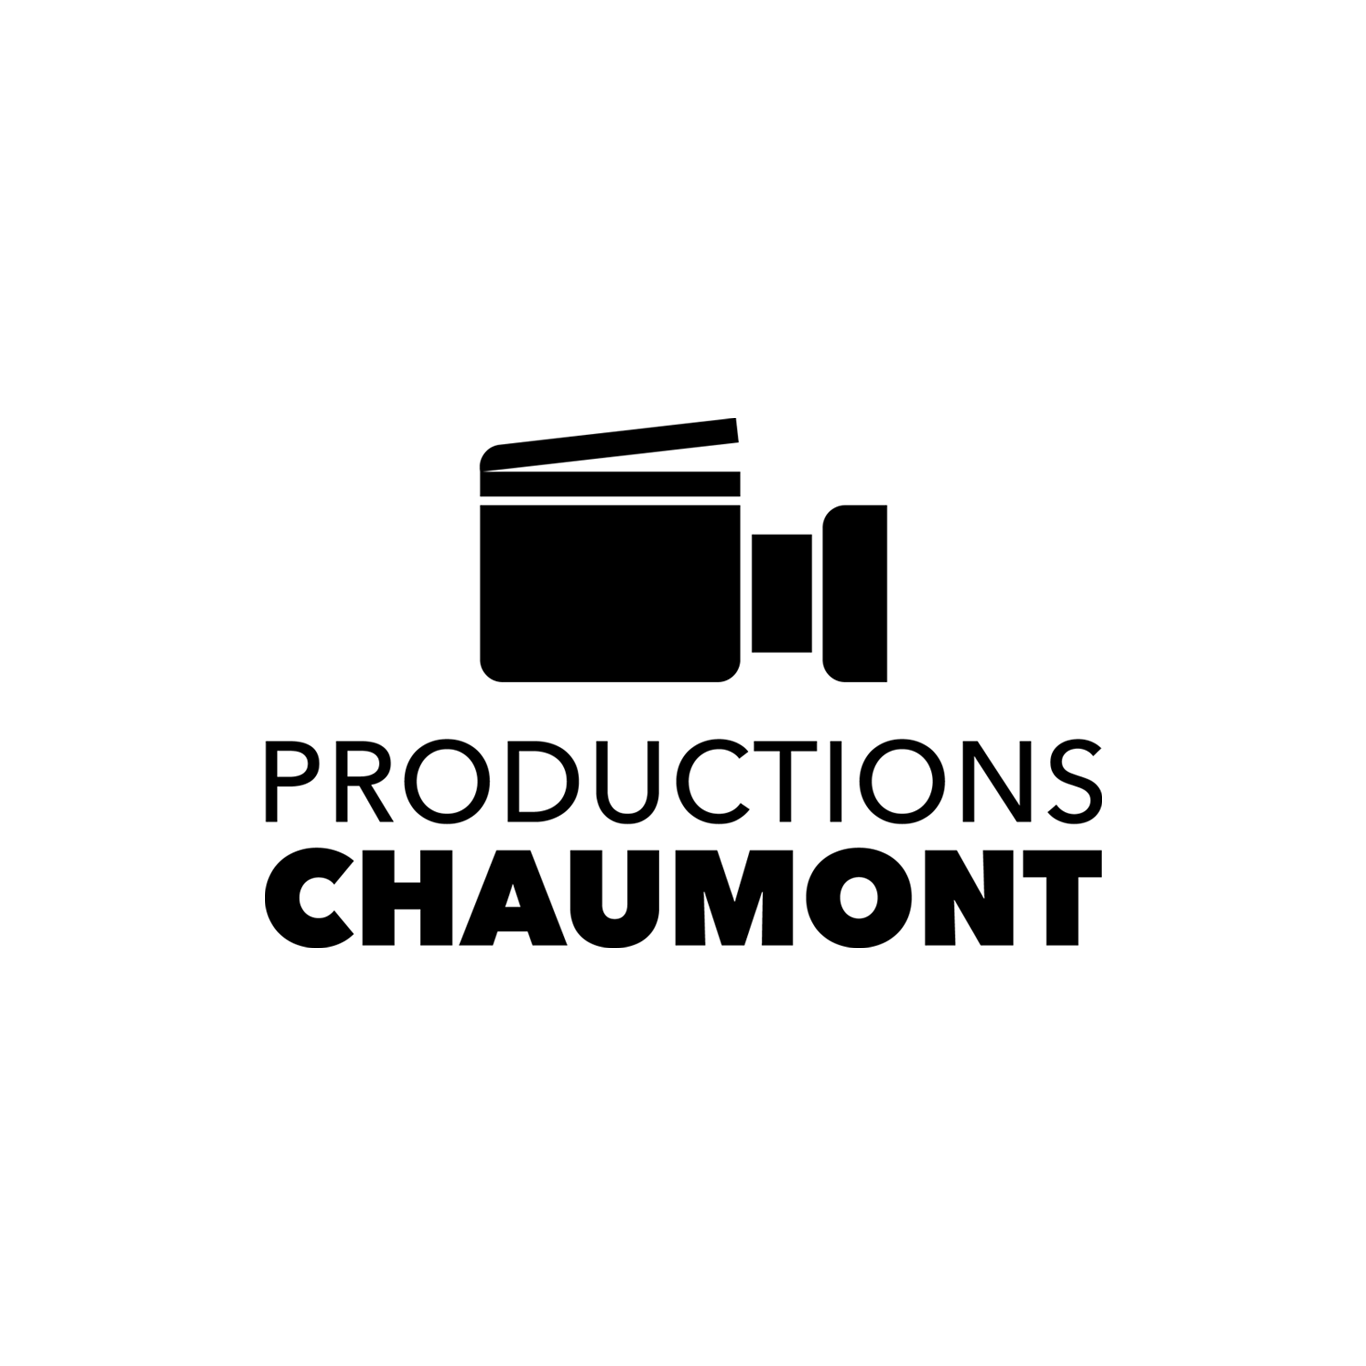 (c) Productionschaumont.com